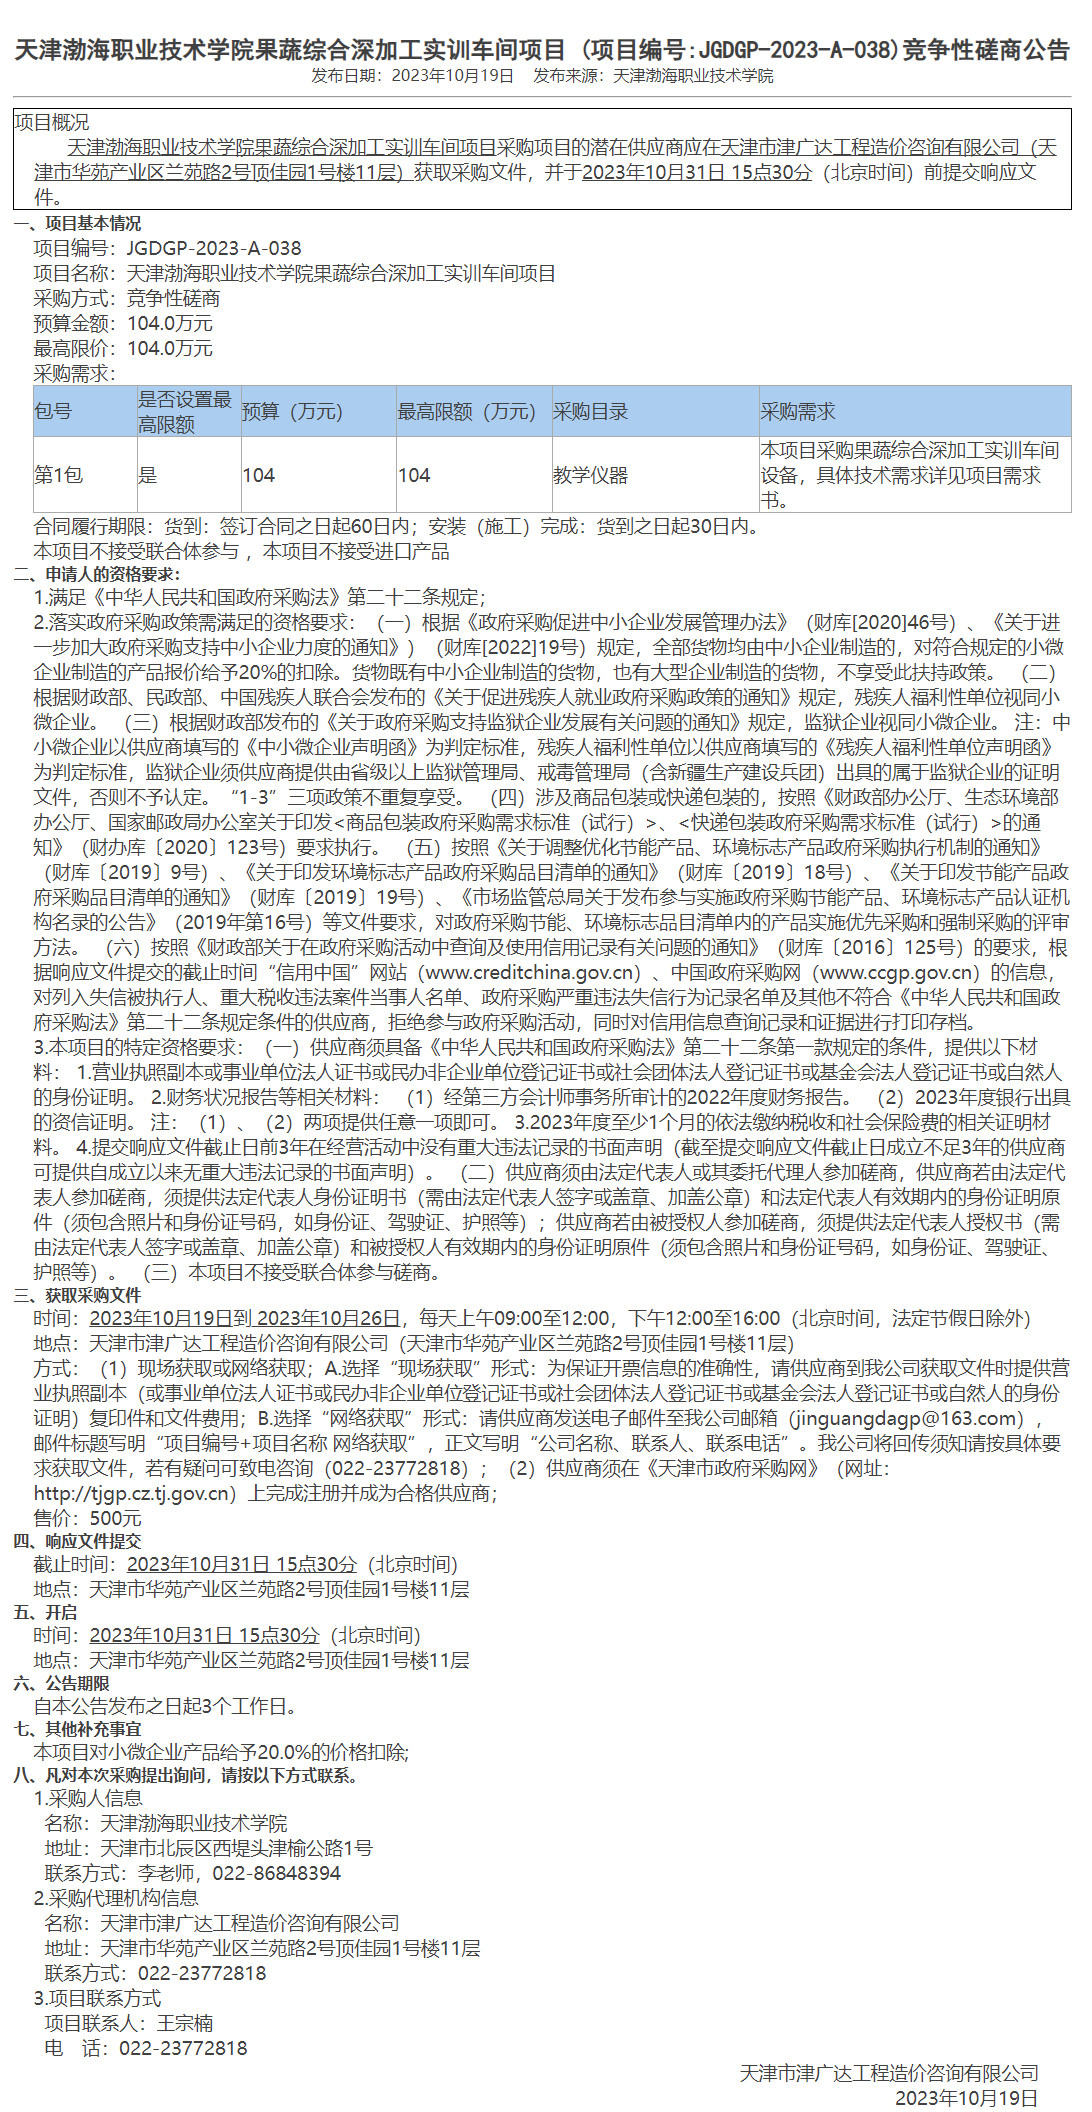 天津渤海职业技术学院果蔬综合深加工实训车间项目 (图1)